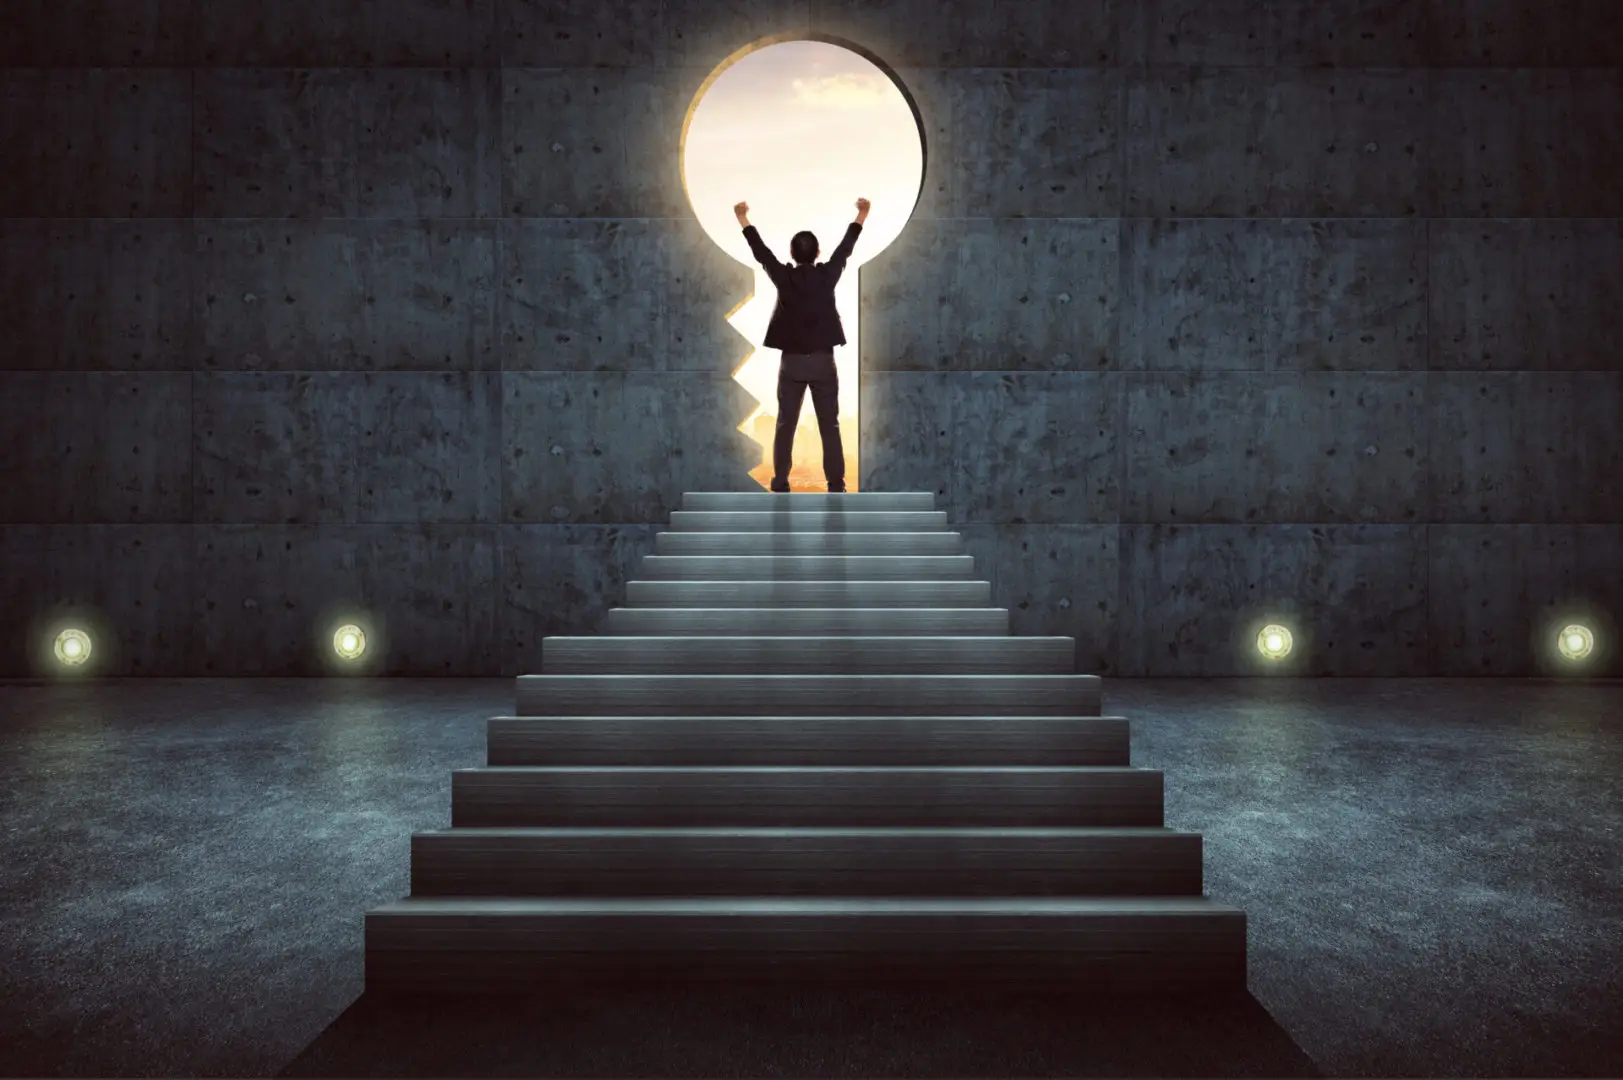 Symbolisches Bild eines Mannes, der triumphierend am Ende einer Treppe steht und die Arme in einem runden Fenster zum Sonnenuntergang hebt, was den Weg zum Traumjob darstellt.